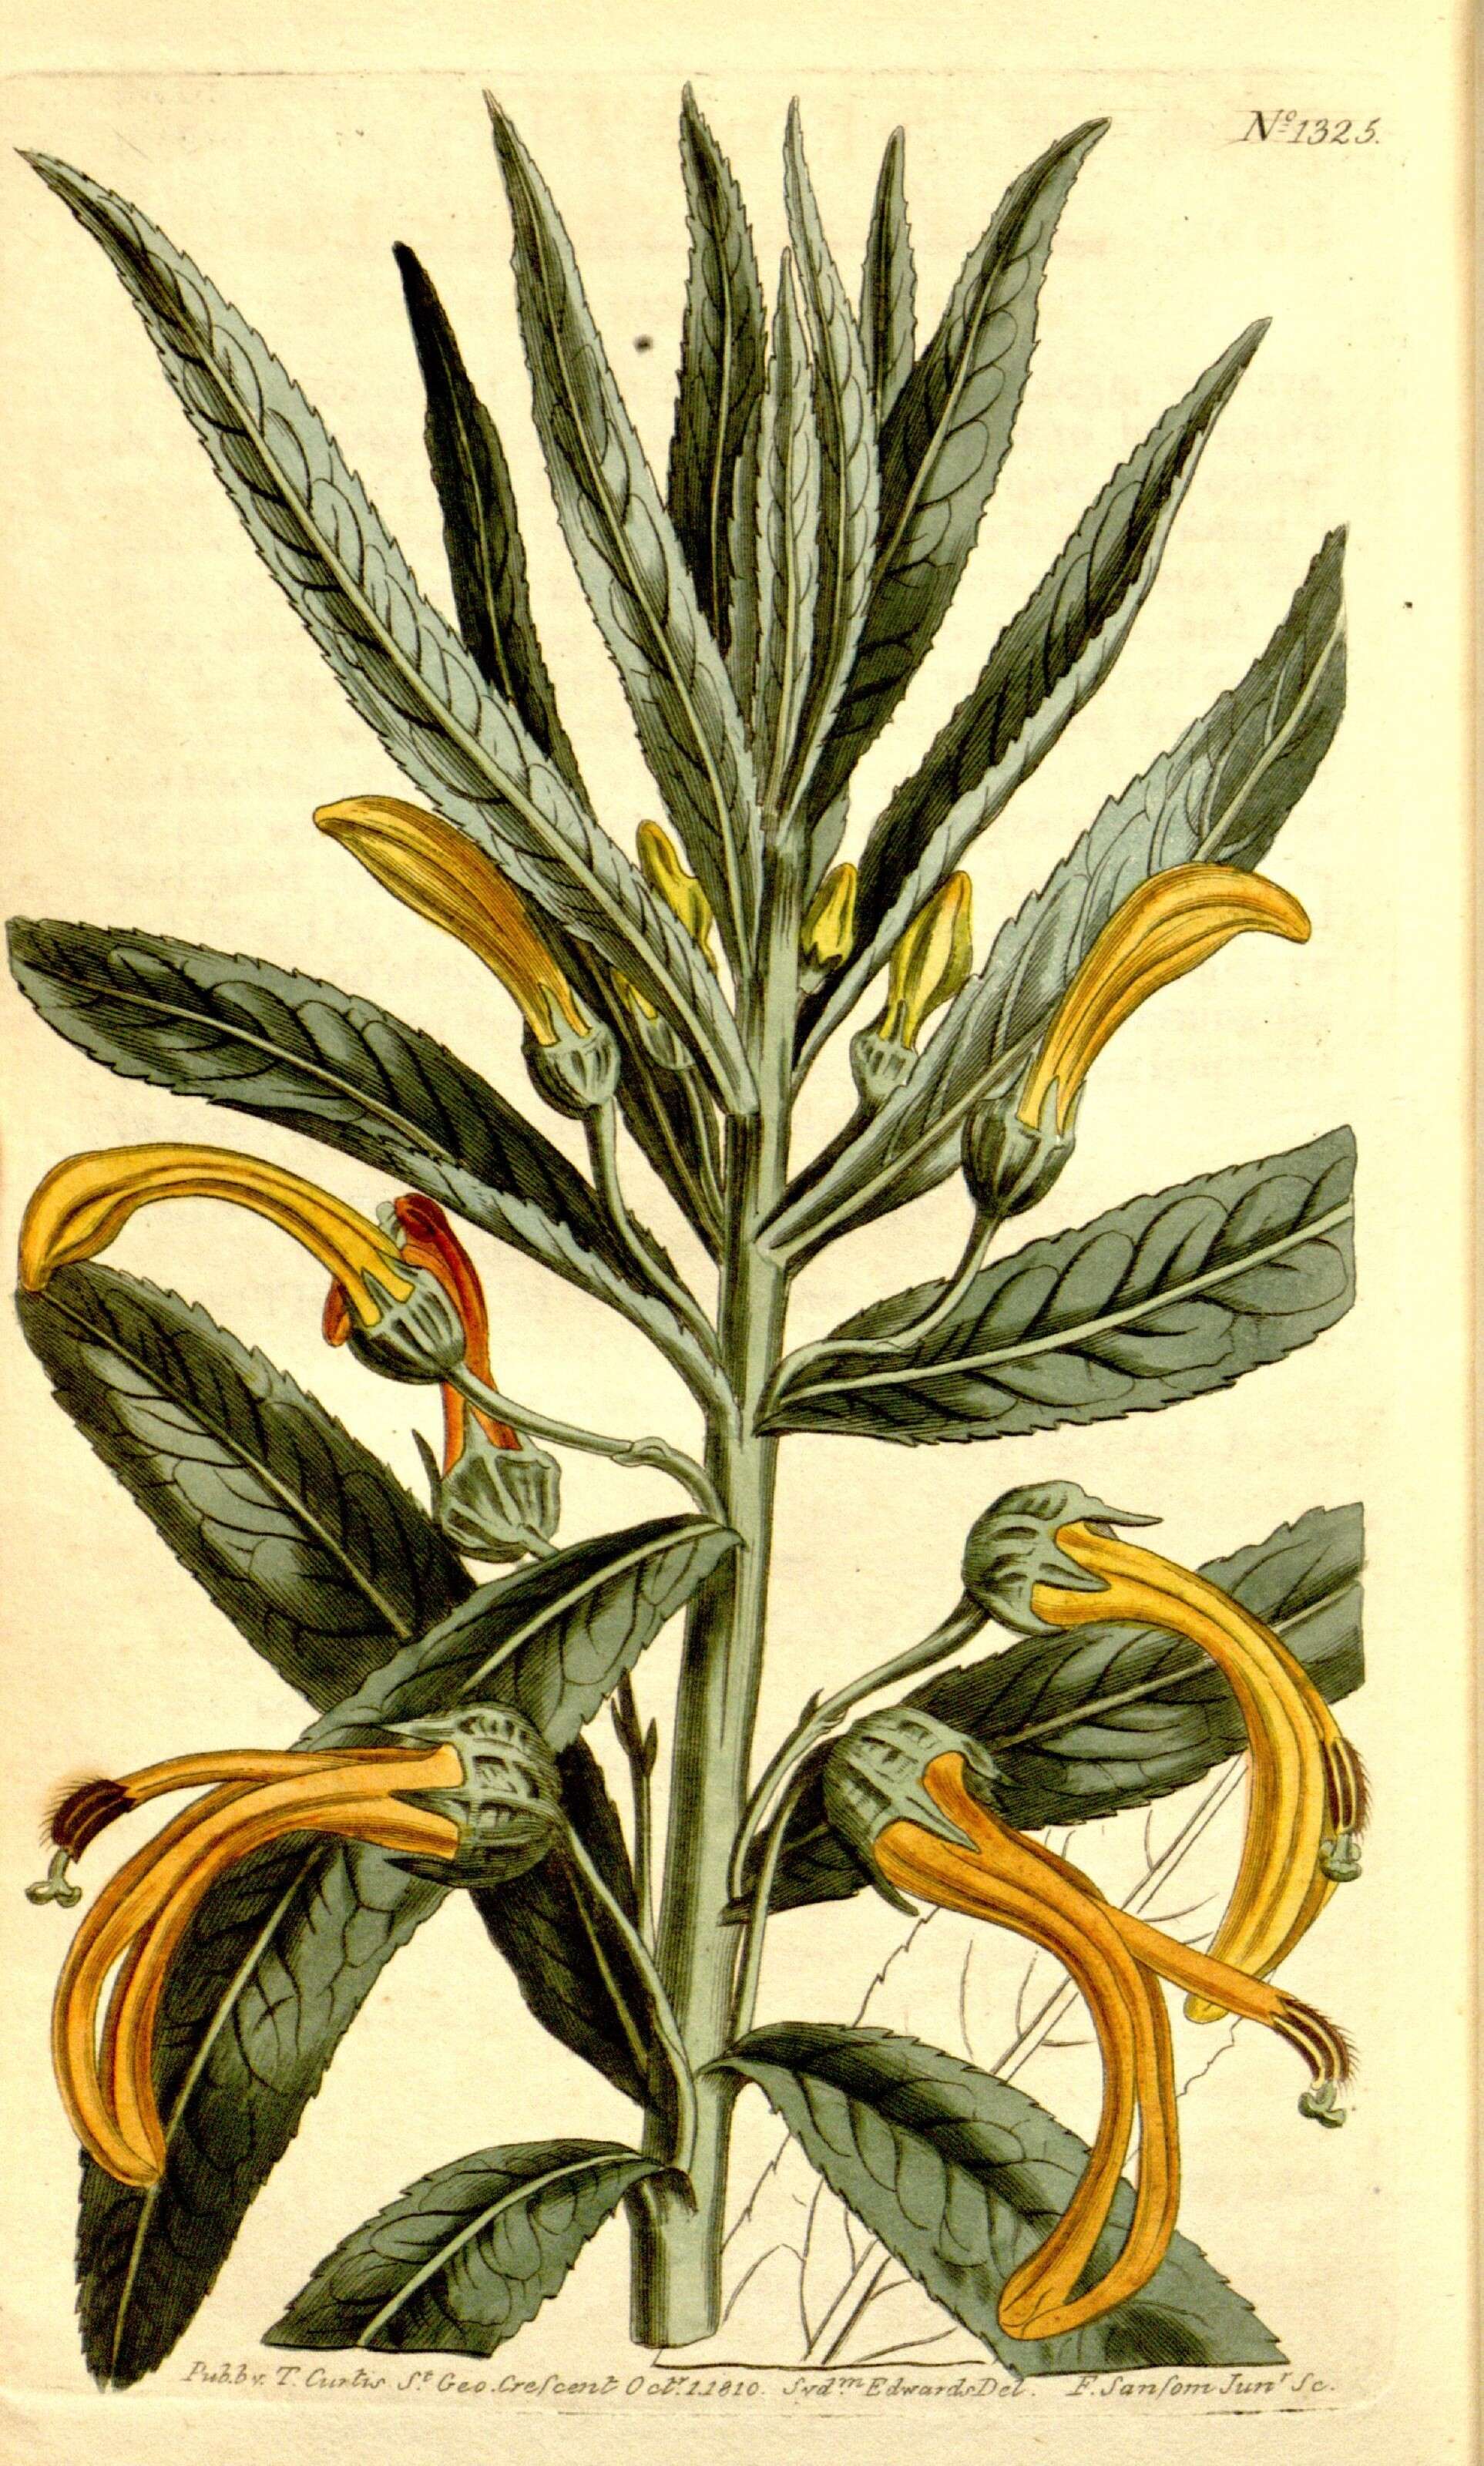 Image of bellflowers